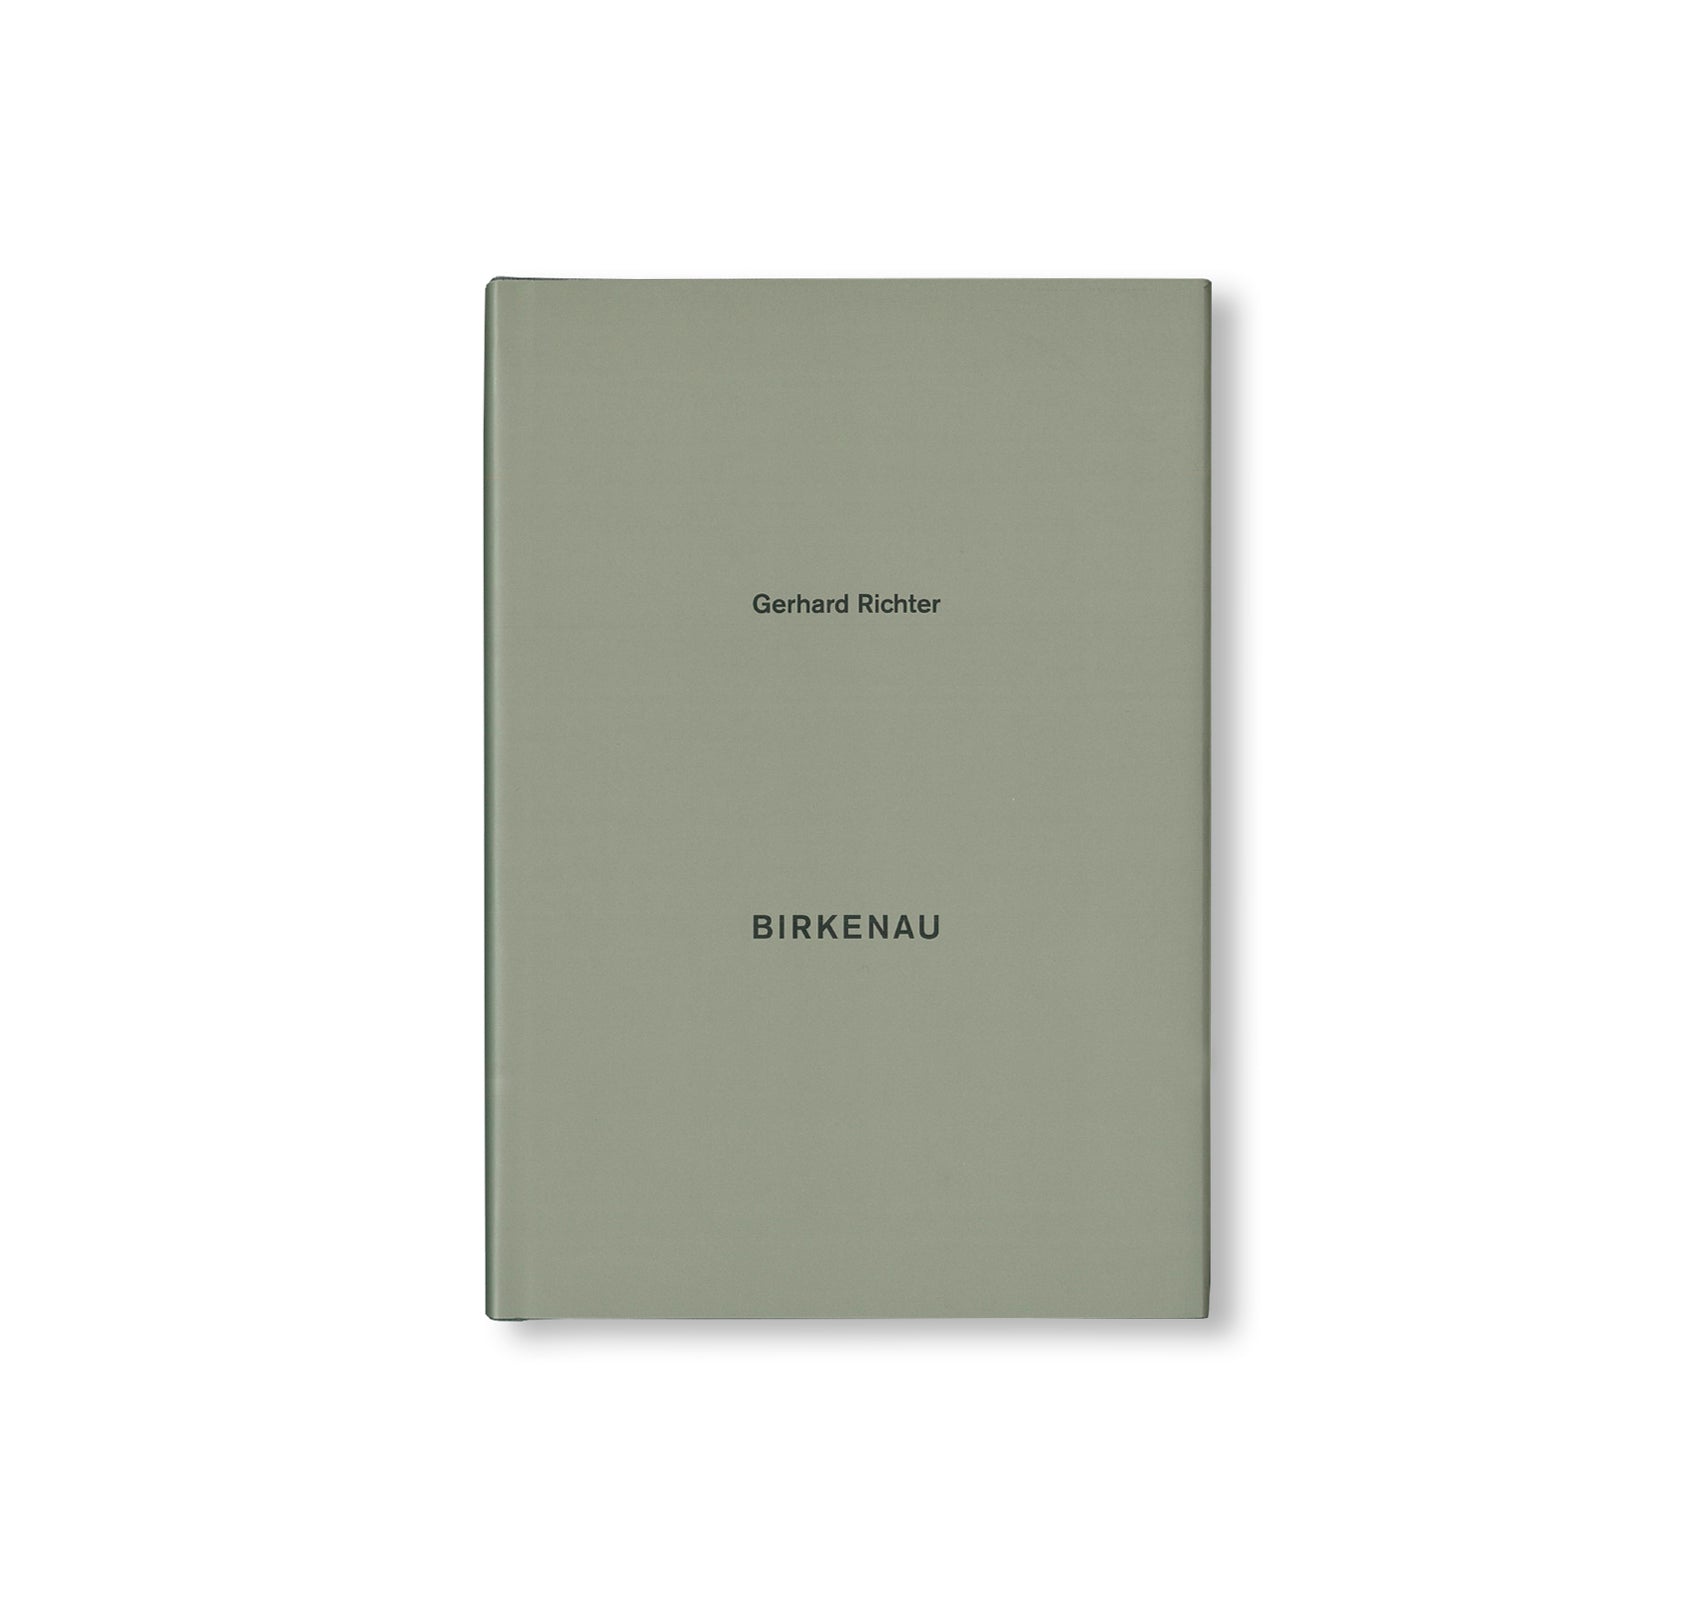 BIRKENAU by Gerhard Richter